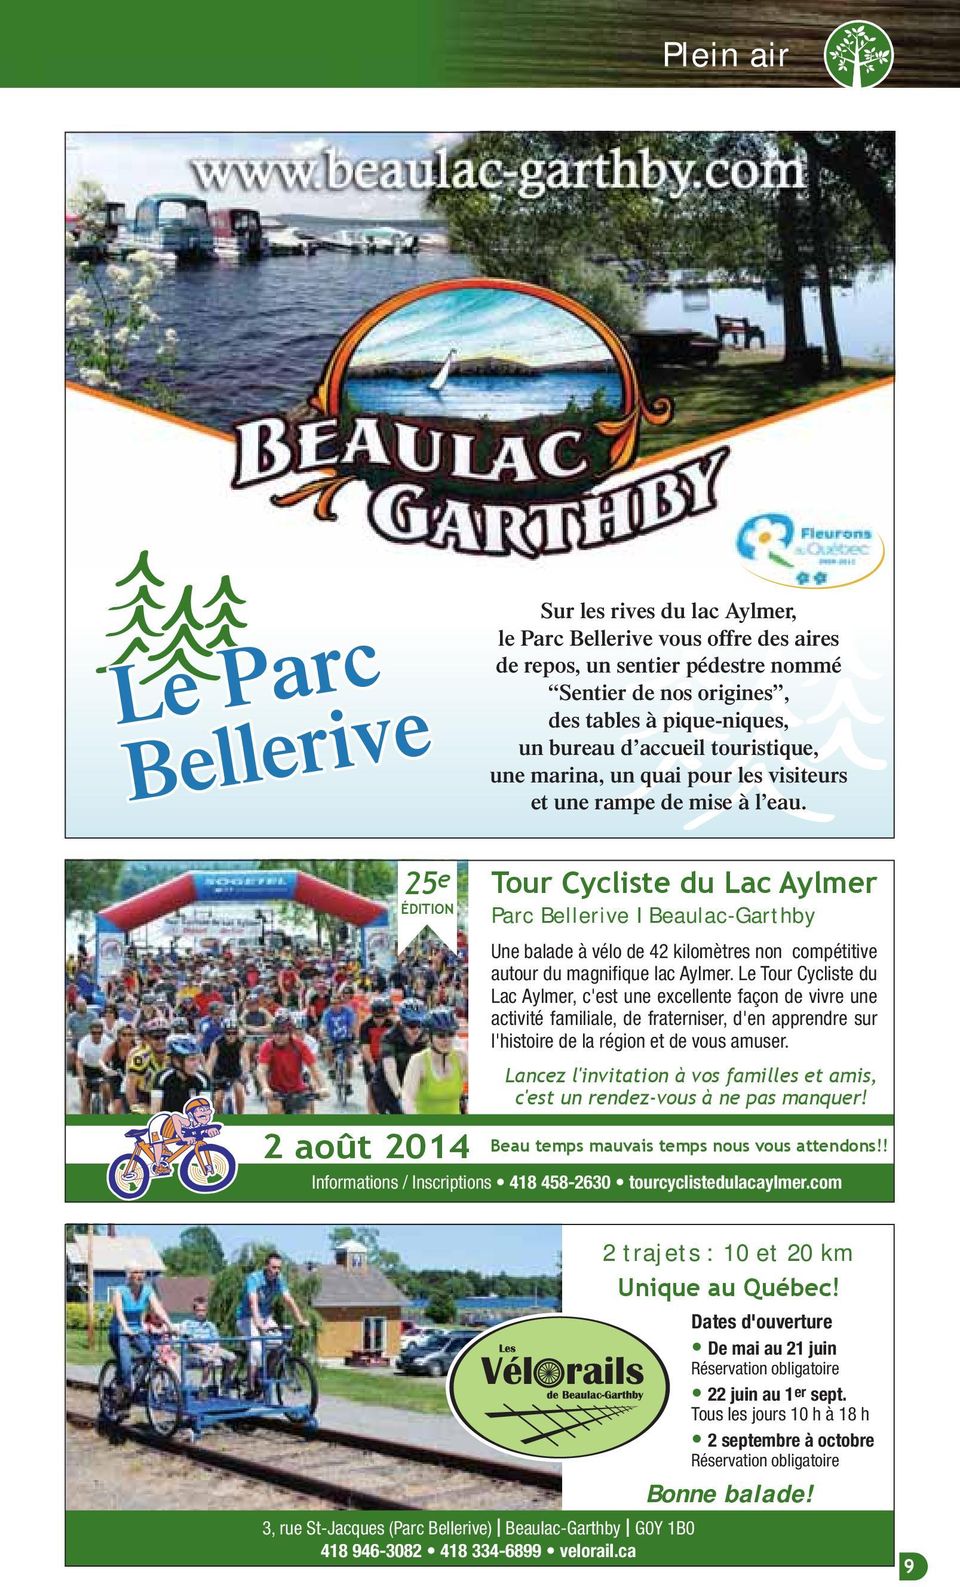 25 e ÉDITION 2 août 2014 Tour Cycliste du Lac Aylmer Parc Bellerive I Beaulac-Garthby Une balade à vélo de 42 kilomètres non compétitive autour du magnifique lac Aylmer.